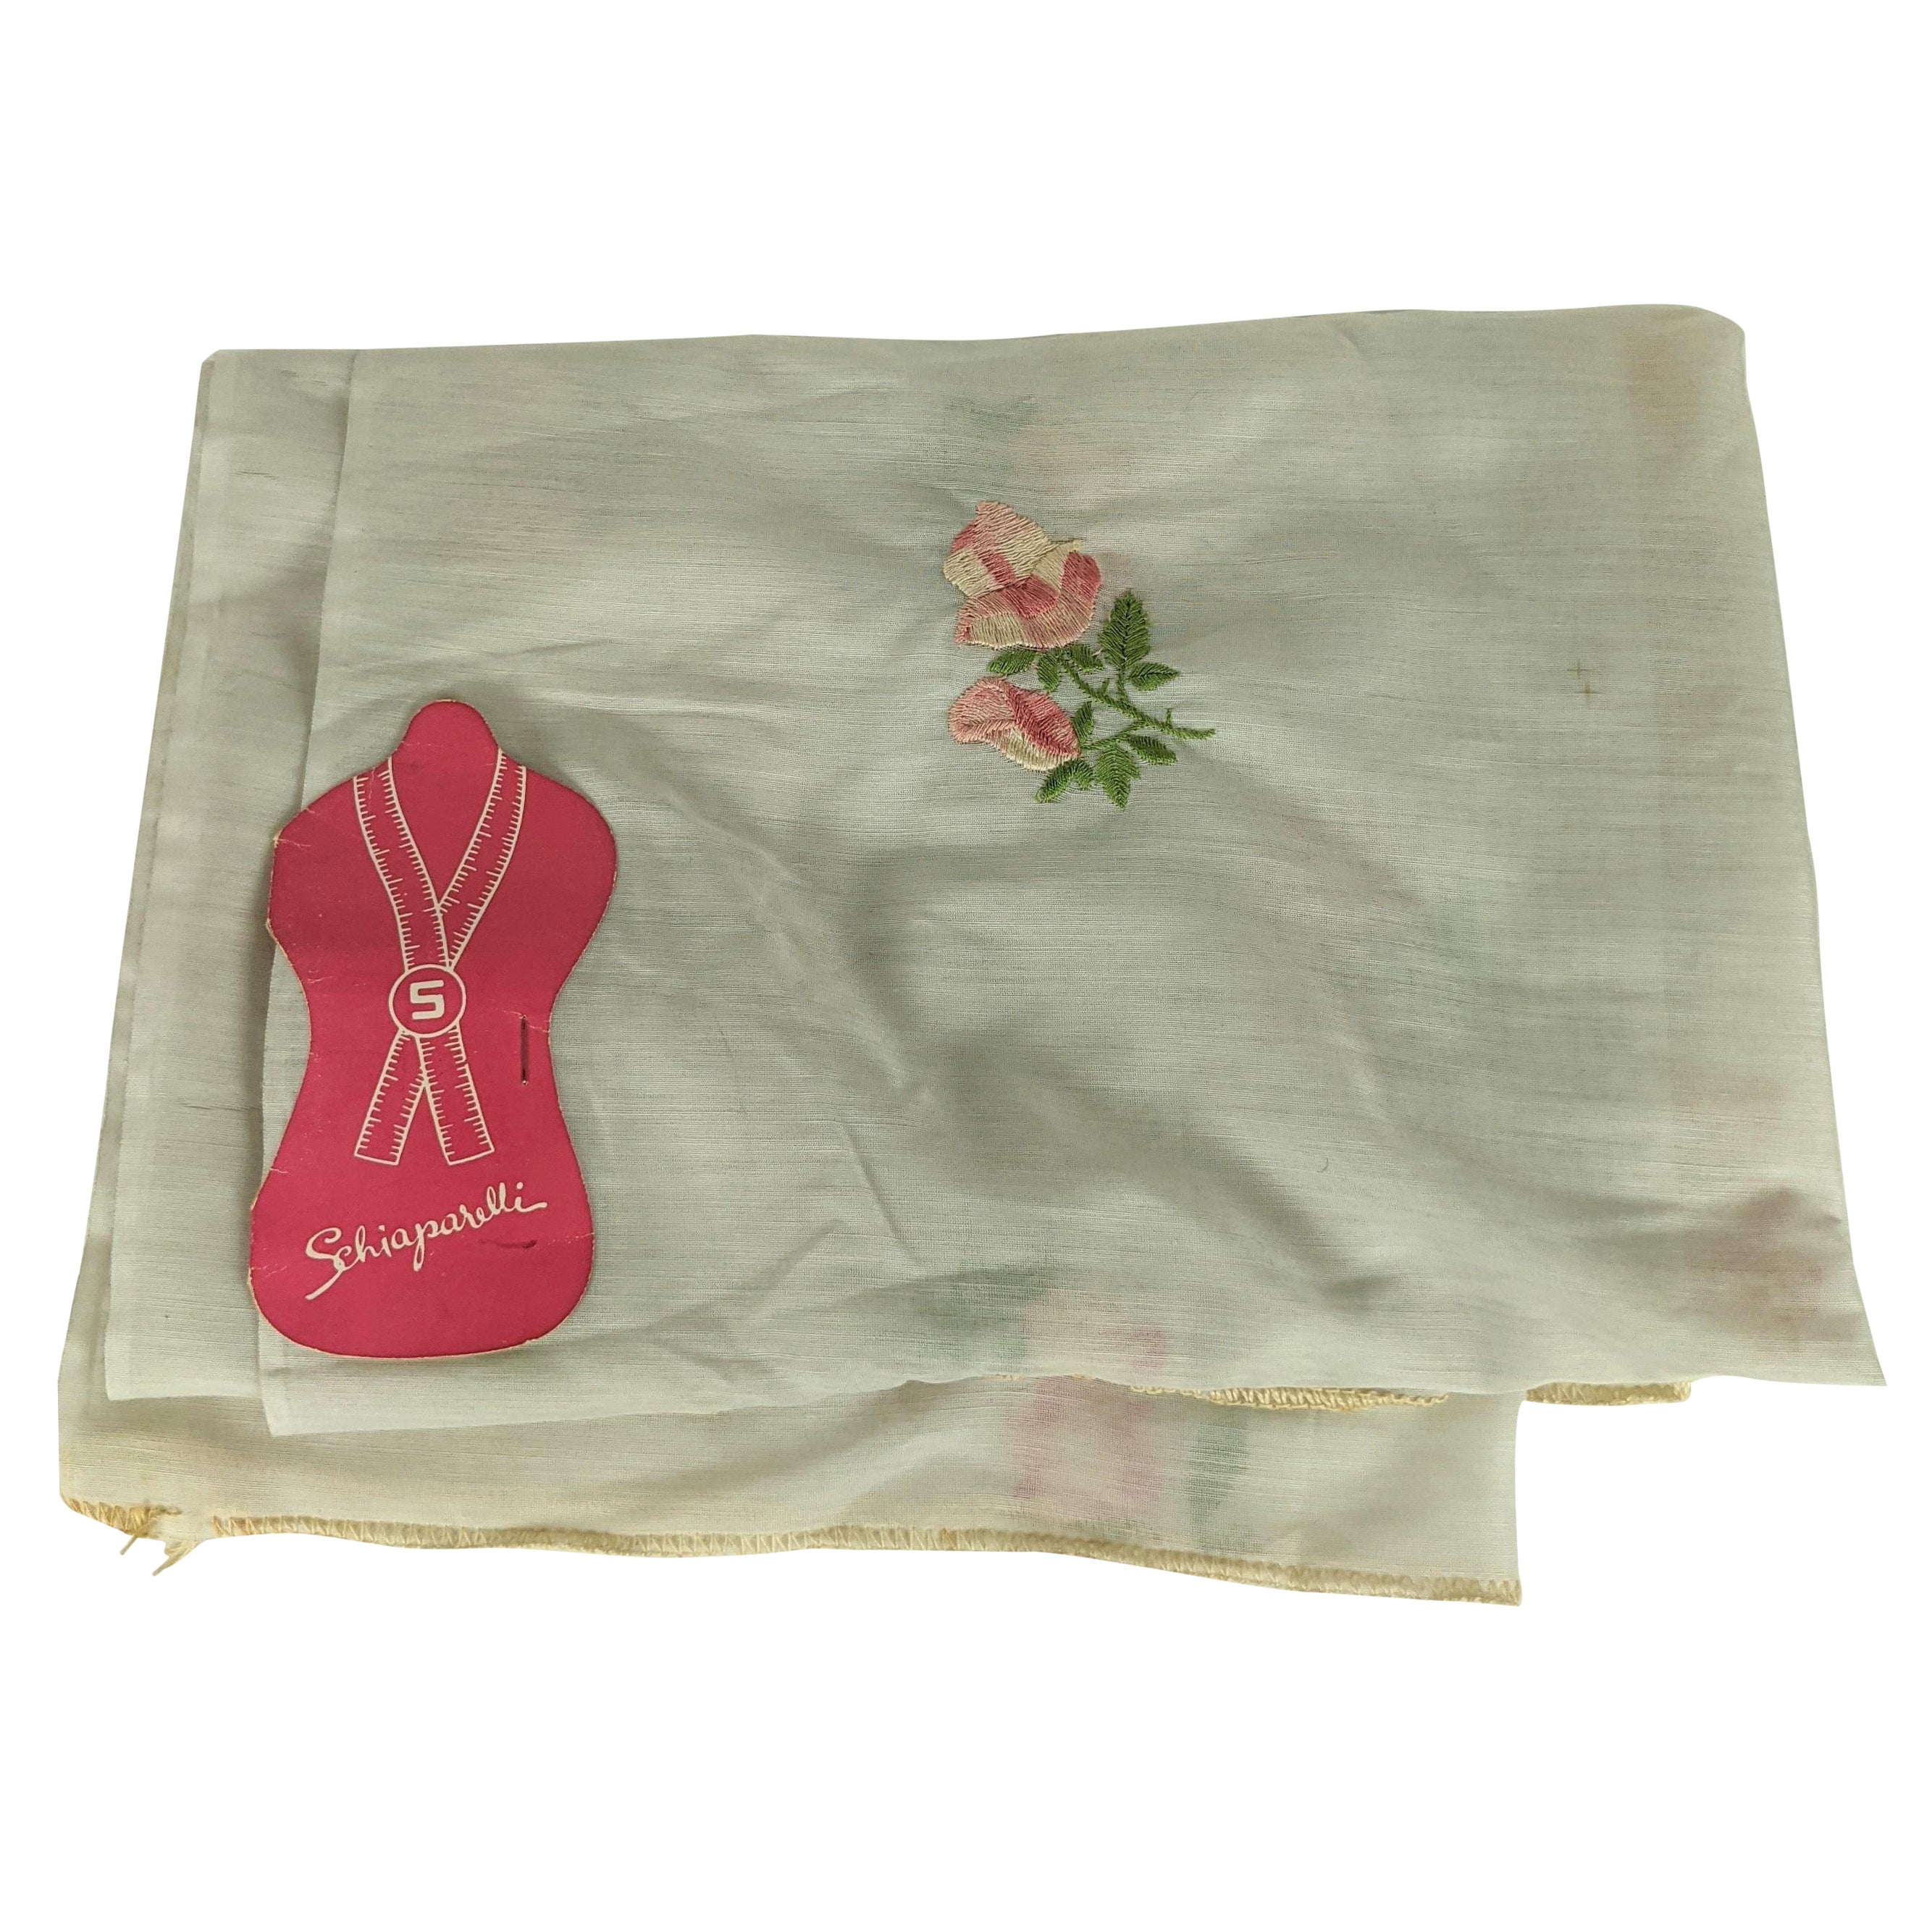 Schiaparelli Sample Fabric "Rose de Printemps" For Sale